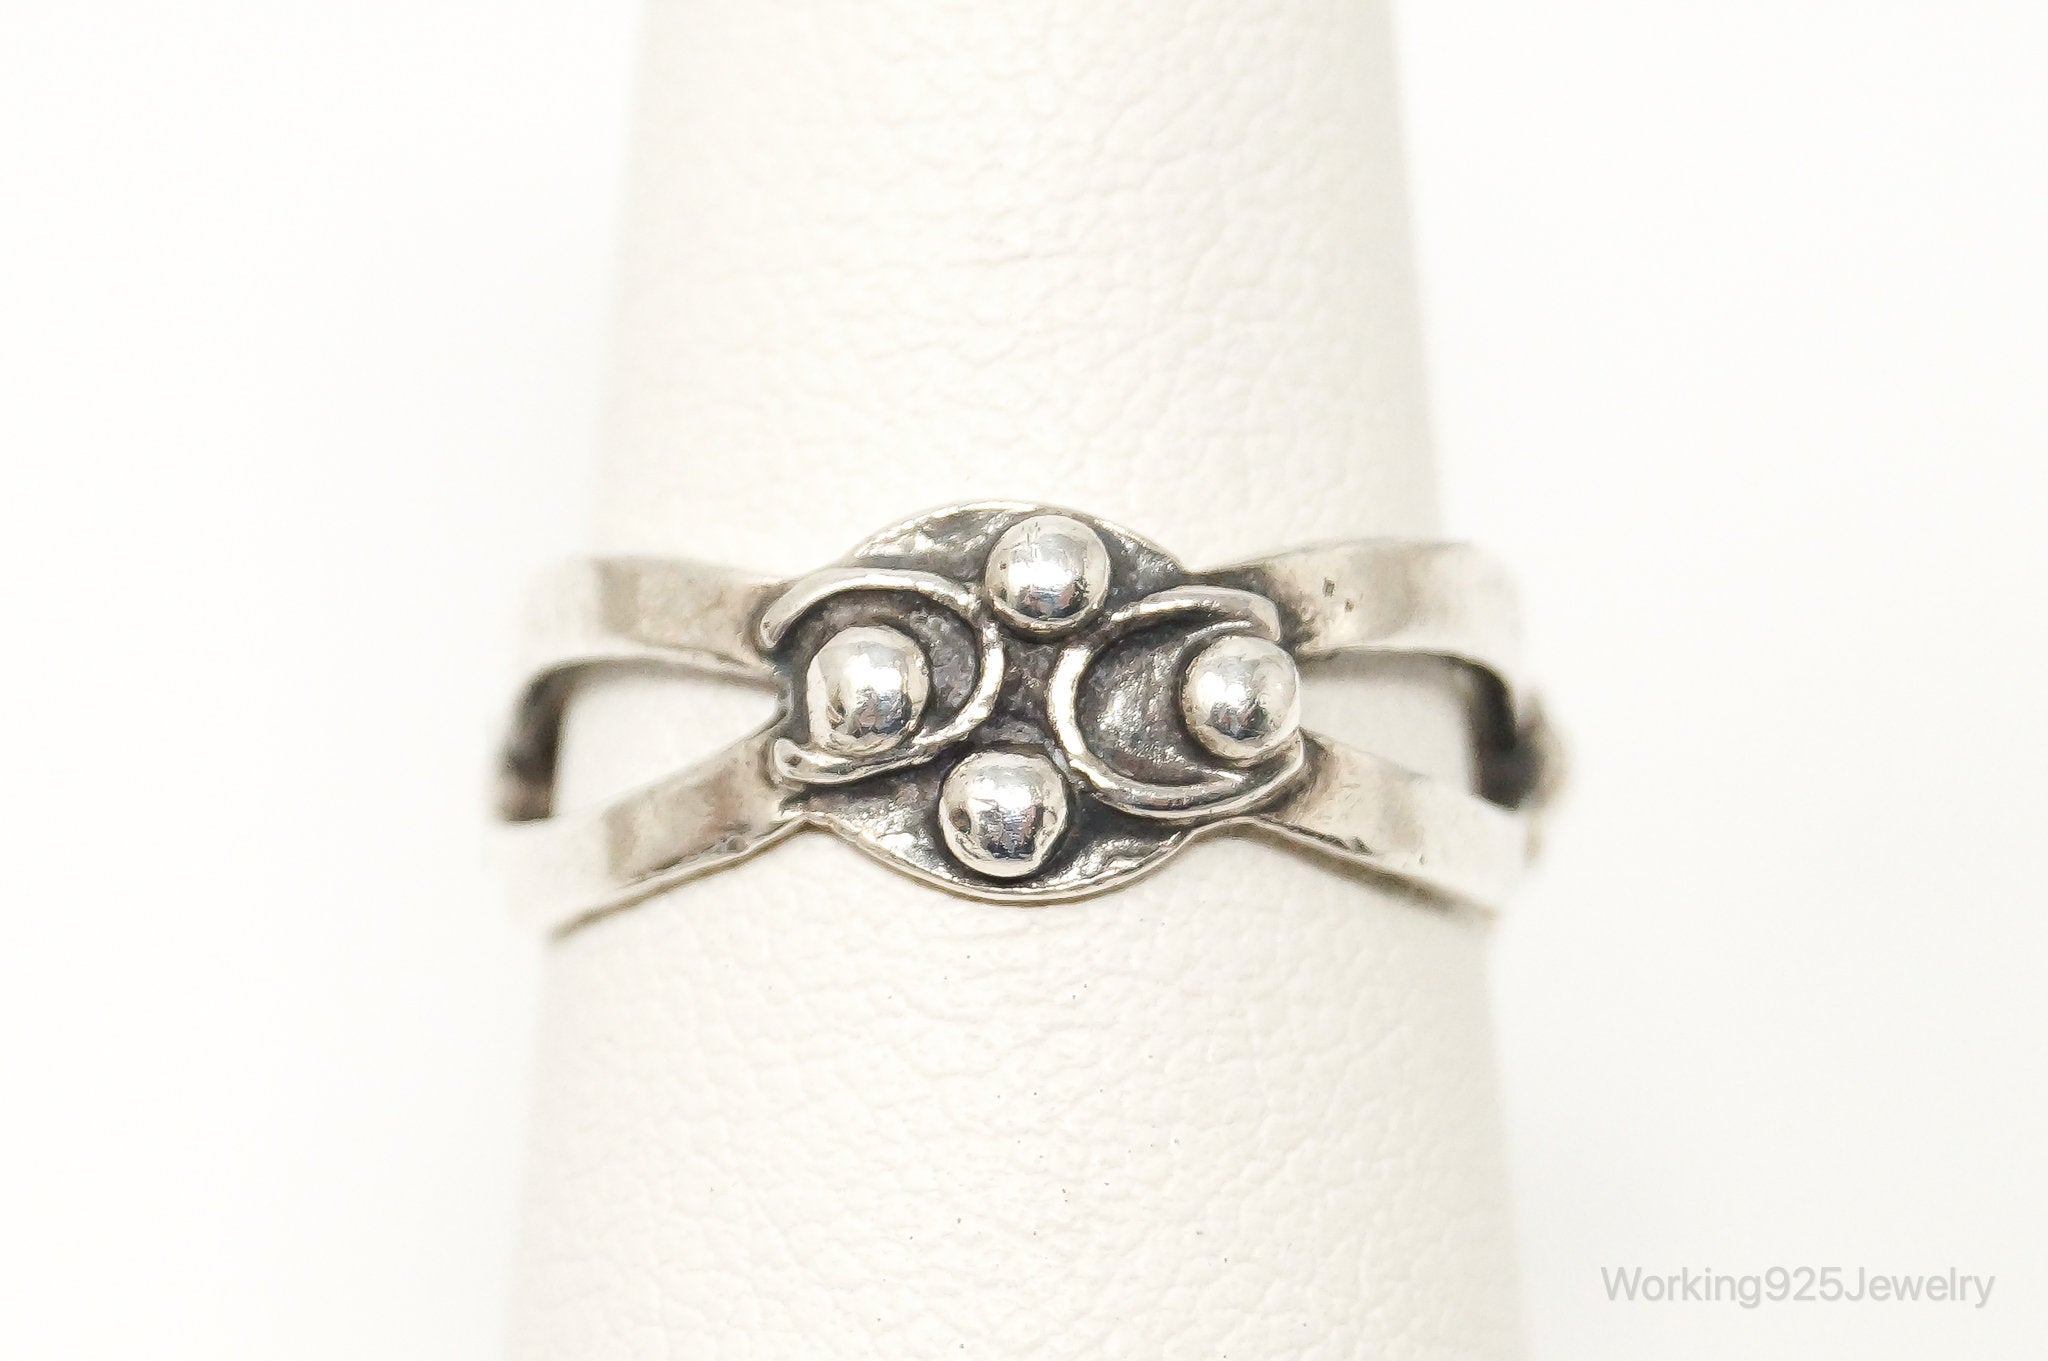 Vintage Mexico Designer RJP Modernist Sterling Silver Ring - Size 6.5